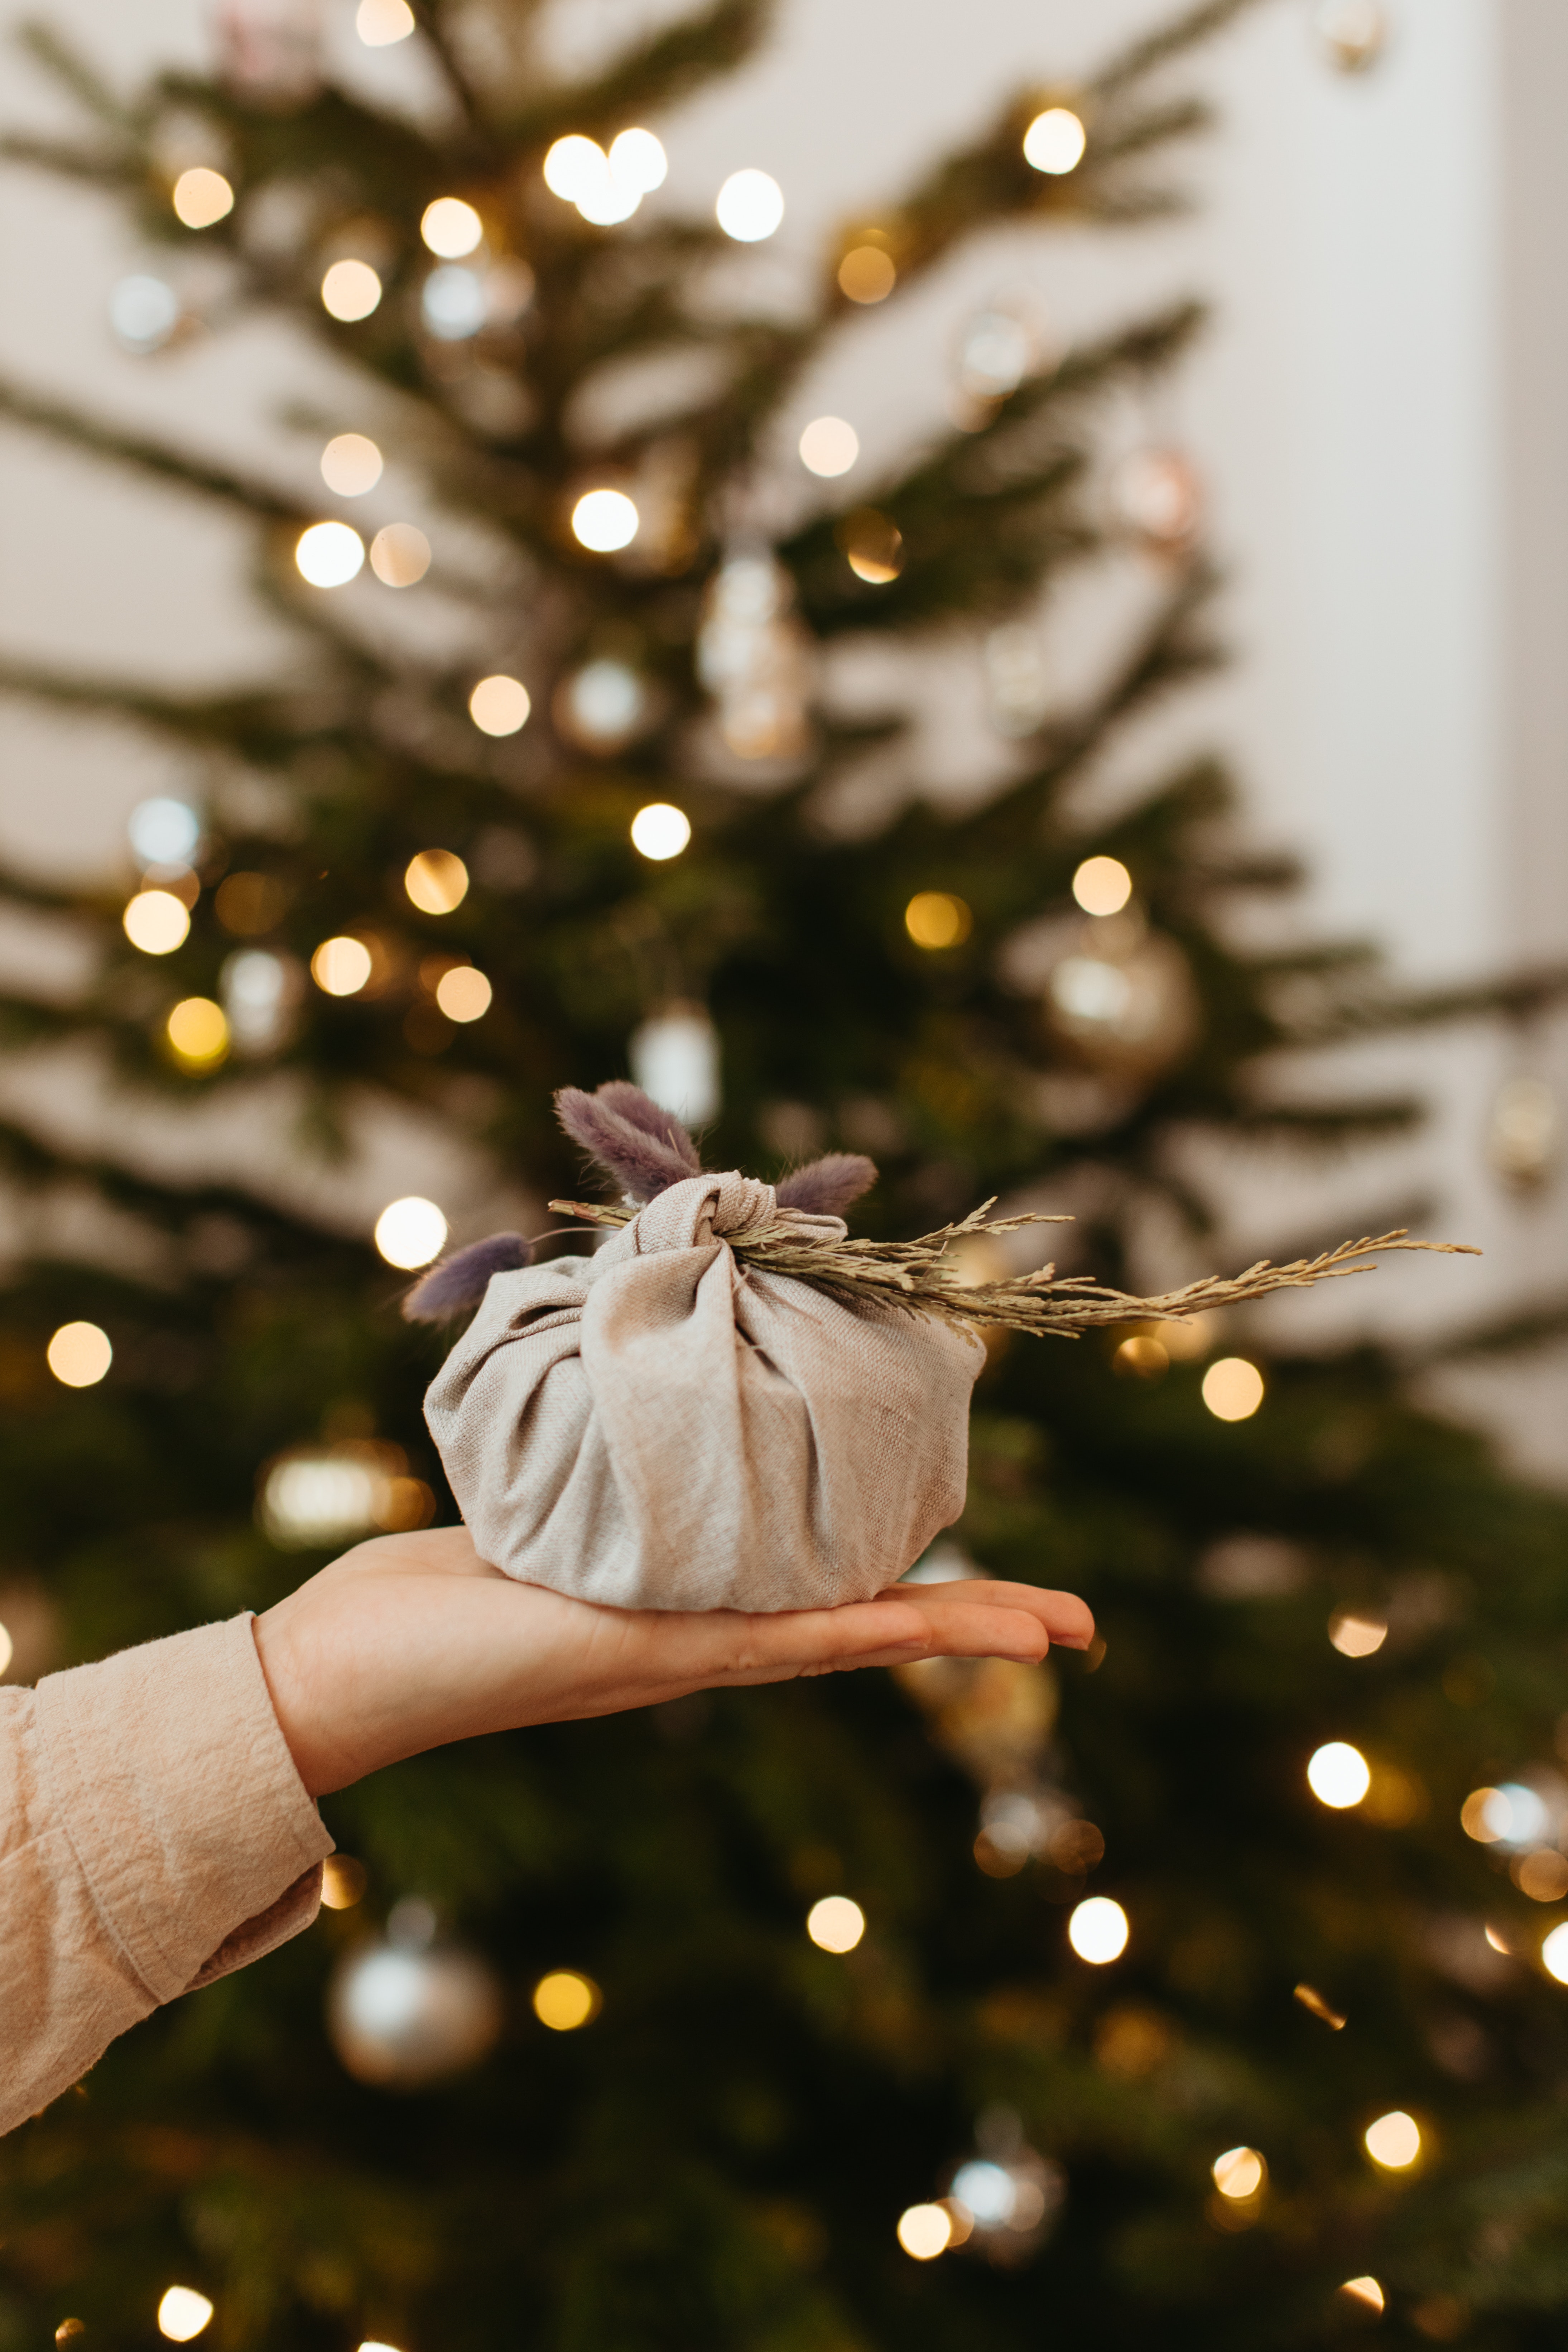 Gift giving during Christmas season